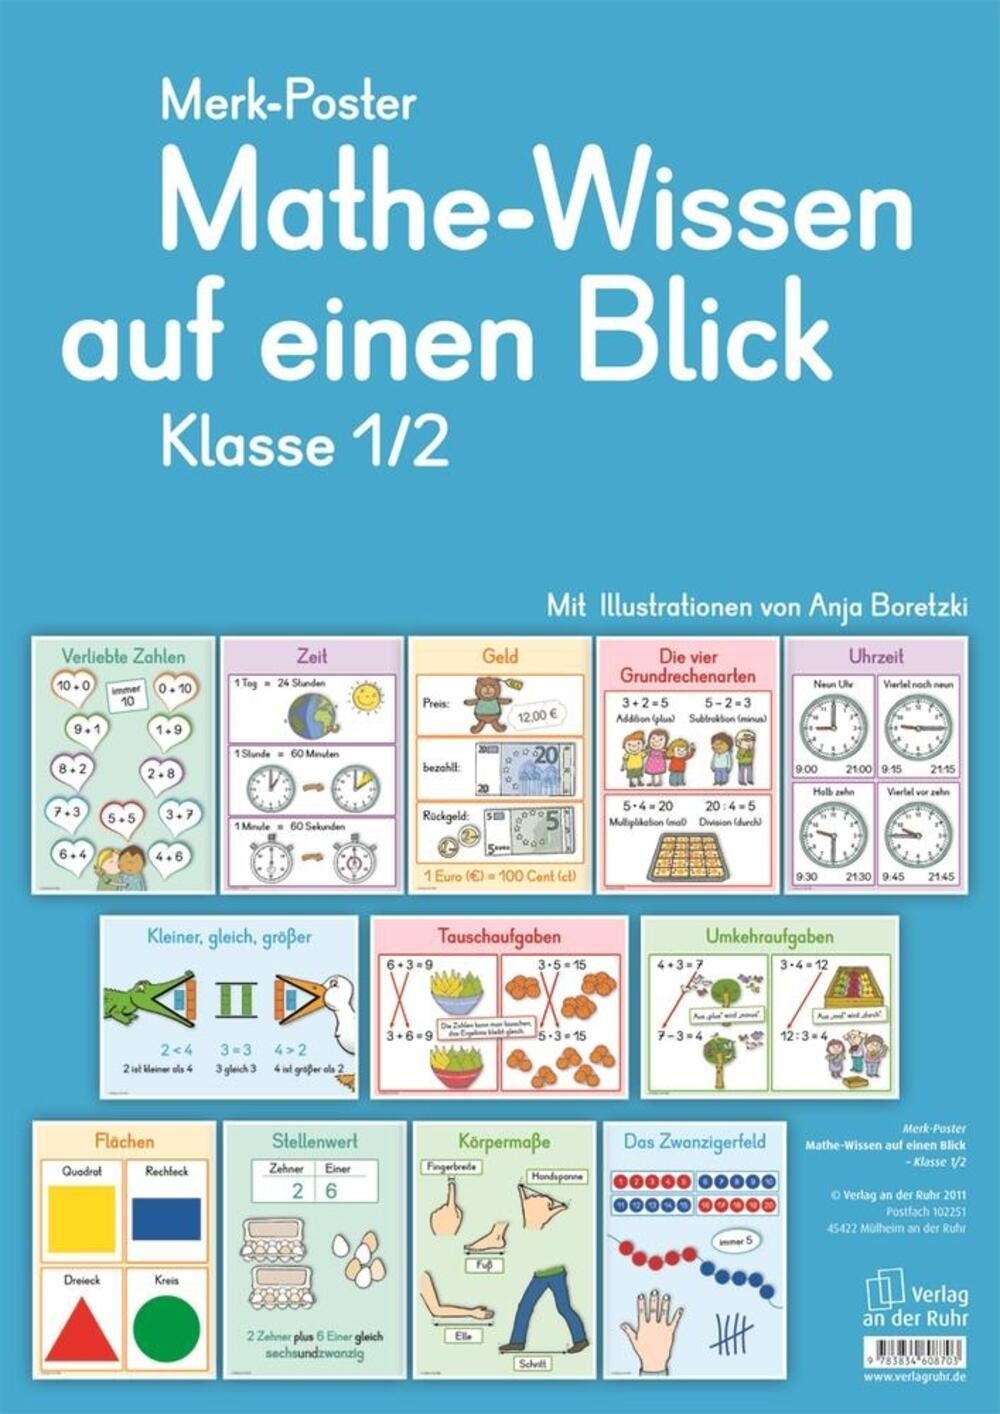 Verlag an der Ruhr Poster Merk-Poster Mathe-Wissen auf einen Blick Klasse 1/2